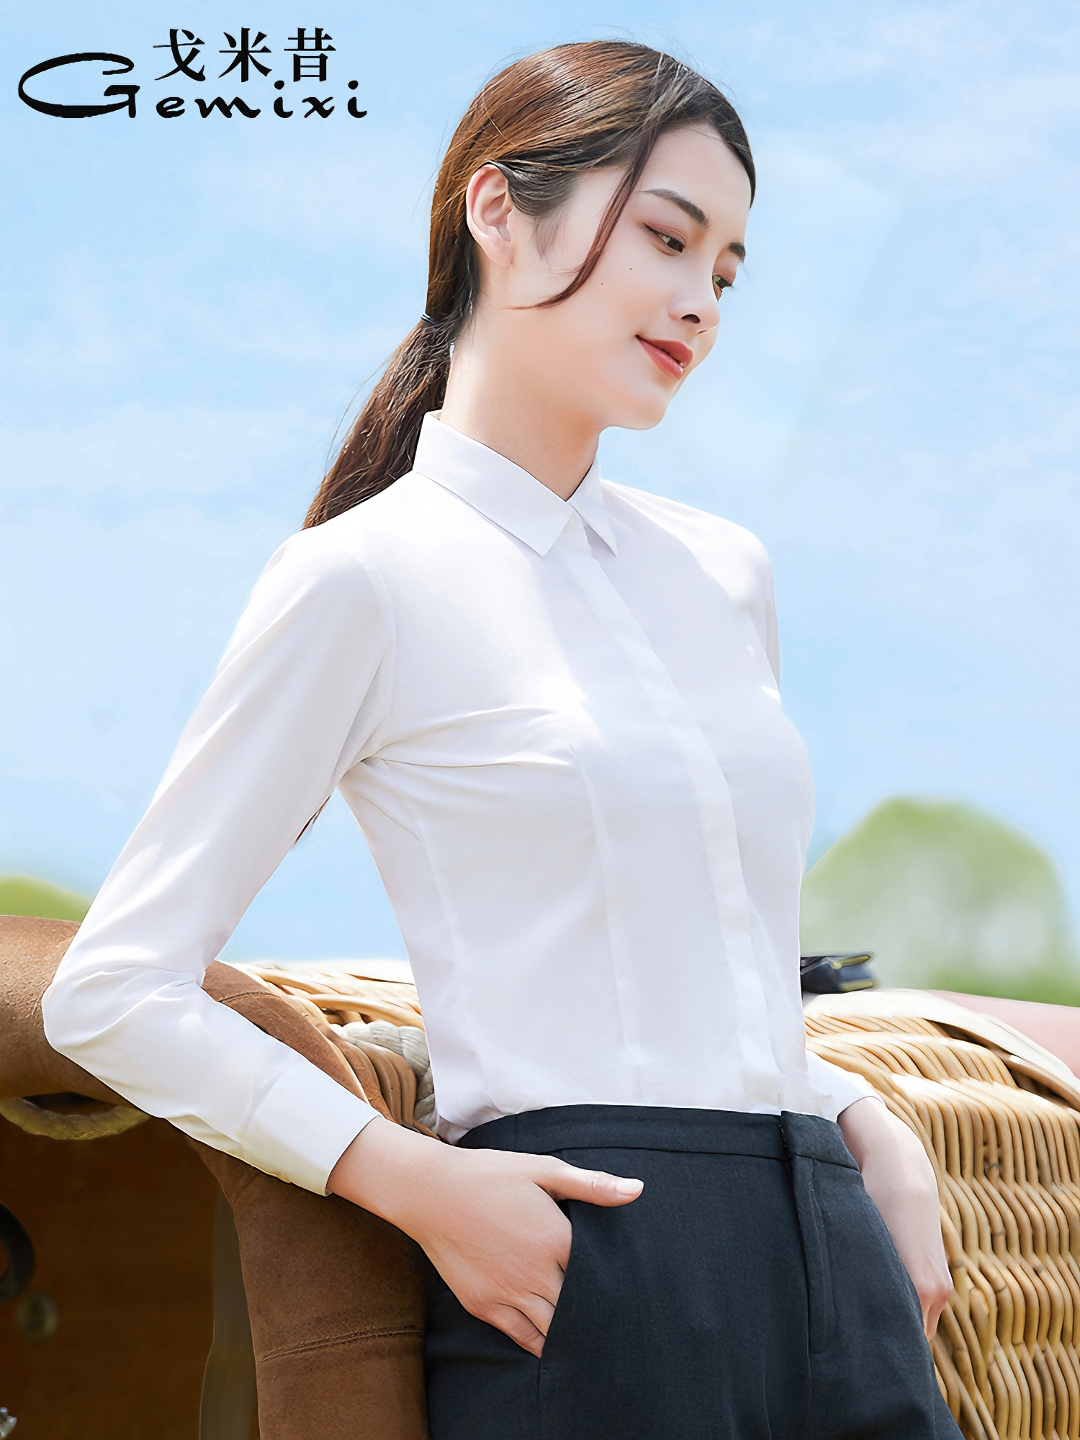 夏季 白衬衫 工作服 薄款 女短袖 蓝衬衣寸竹纤维v领气质工装 职业正装